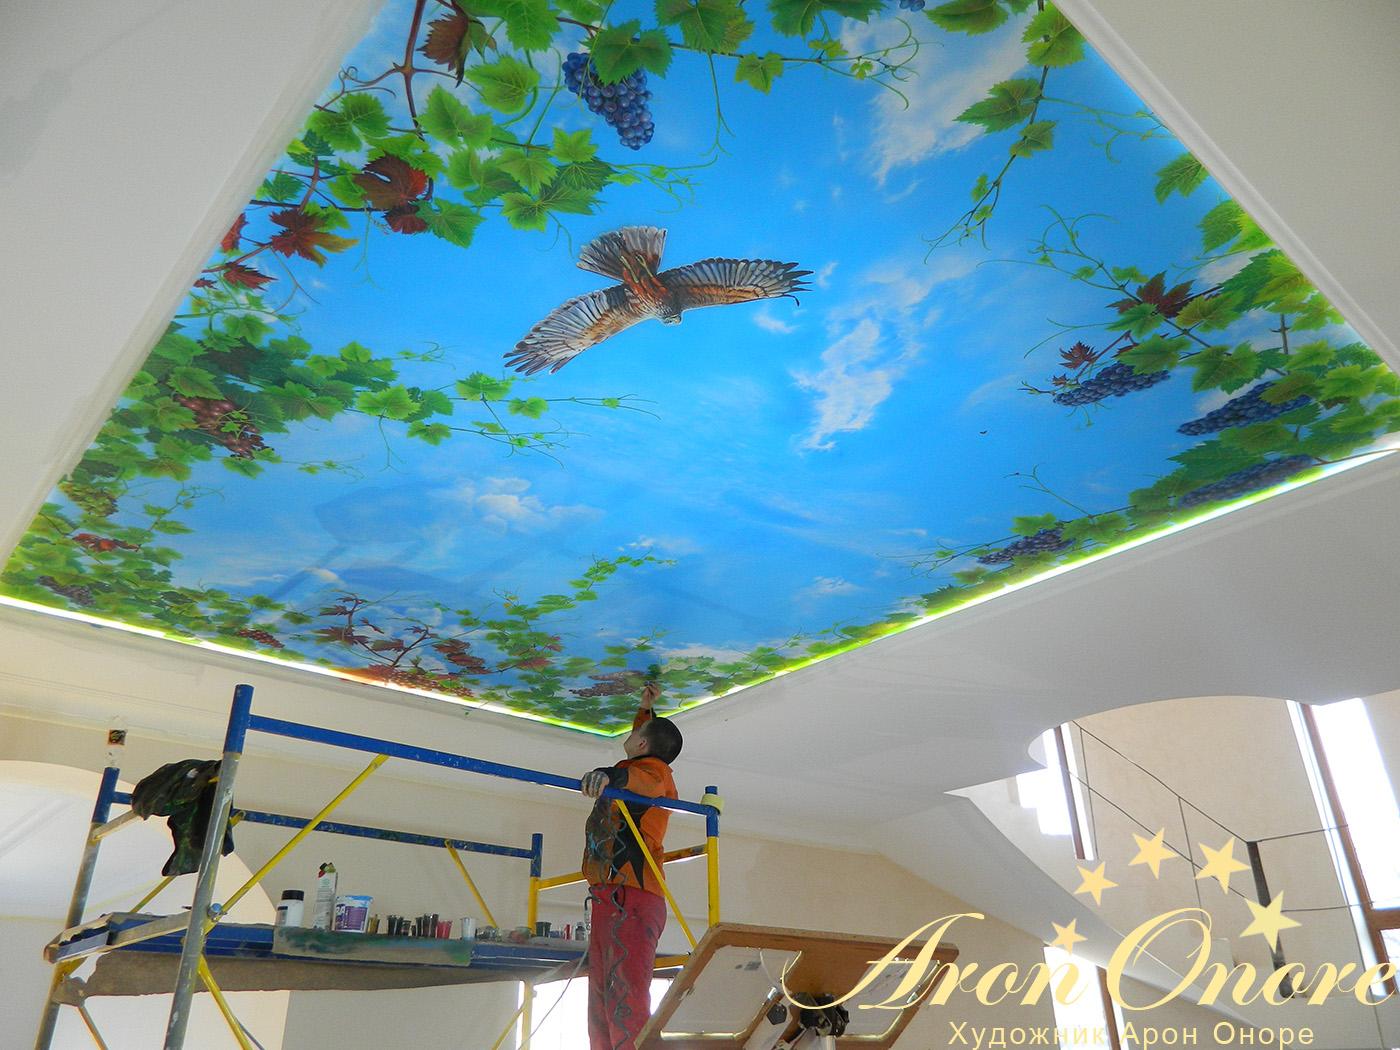 Художник Арон Оноре занимается росписью на потолке